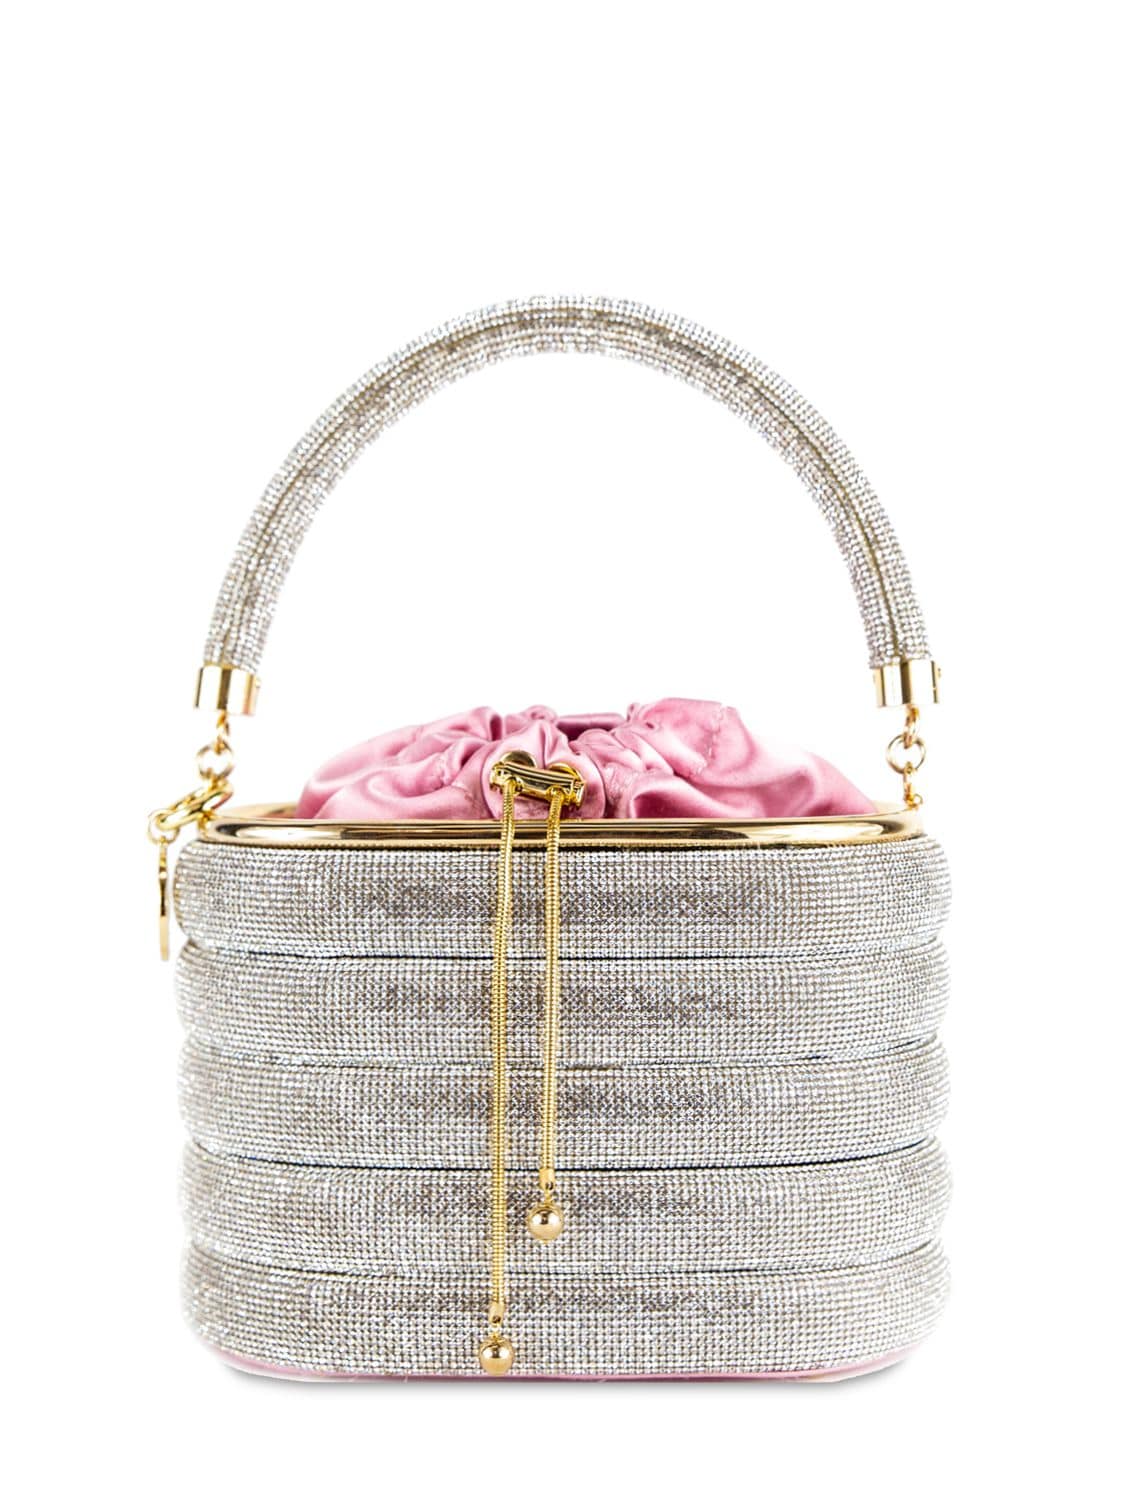 Image of Holli Favilla Embellished Bag